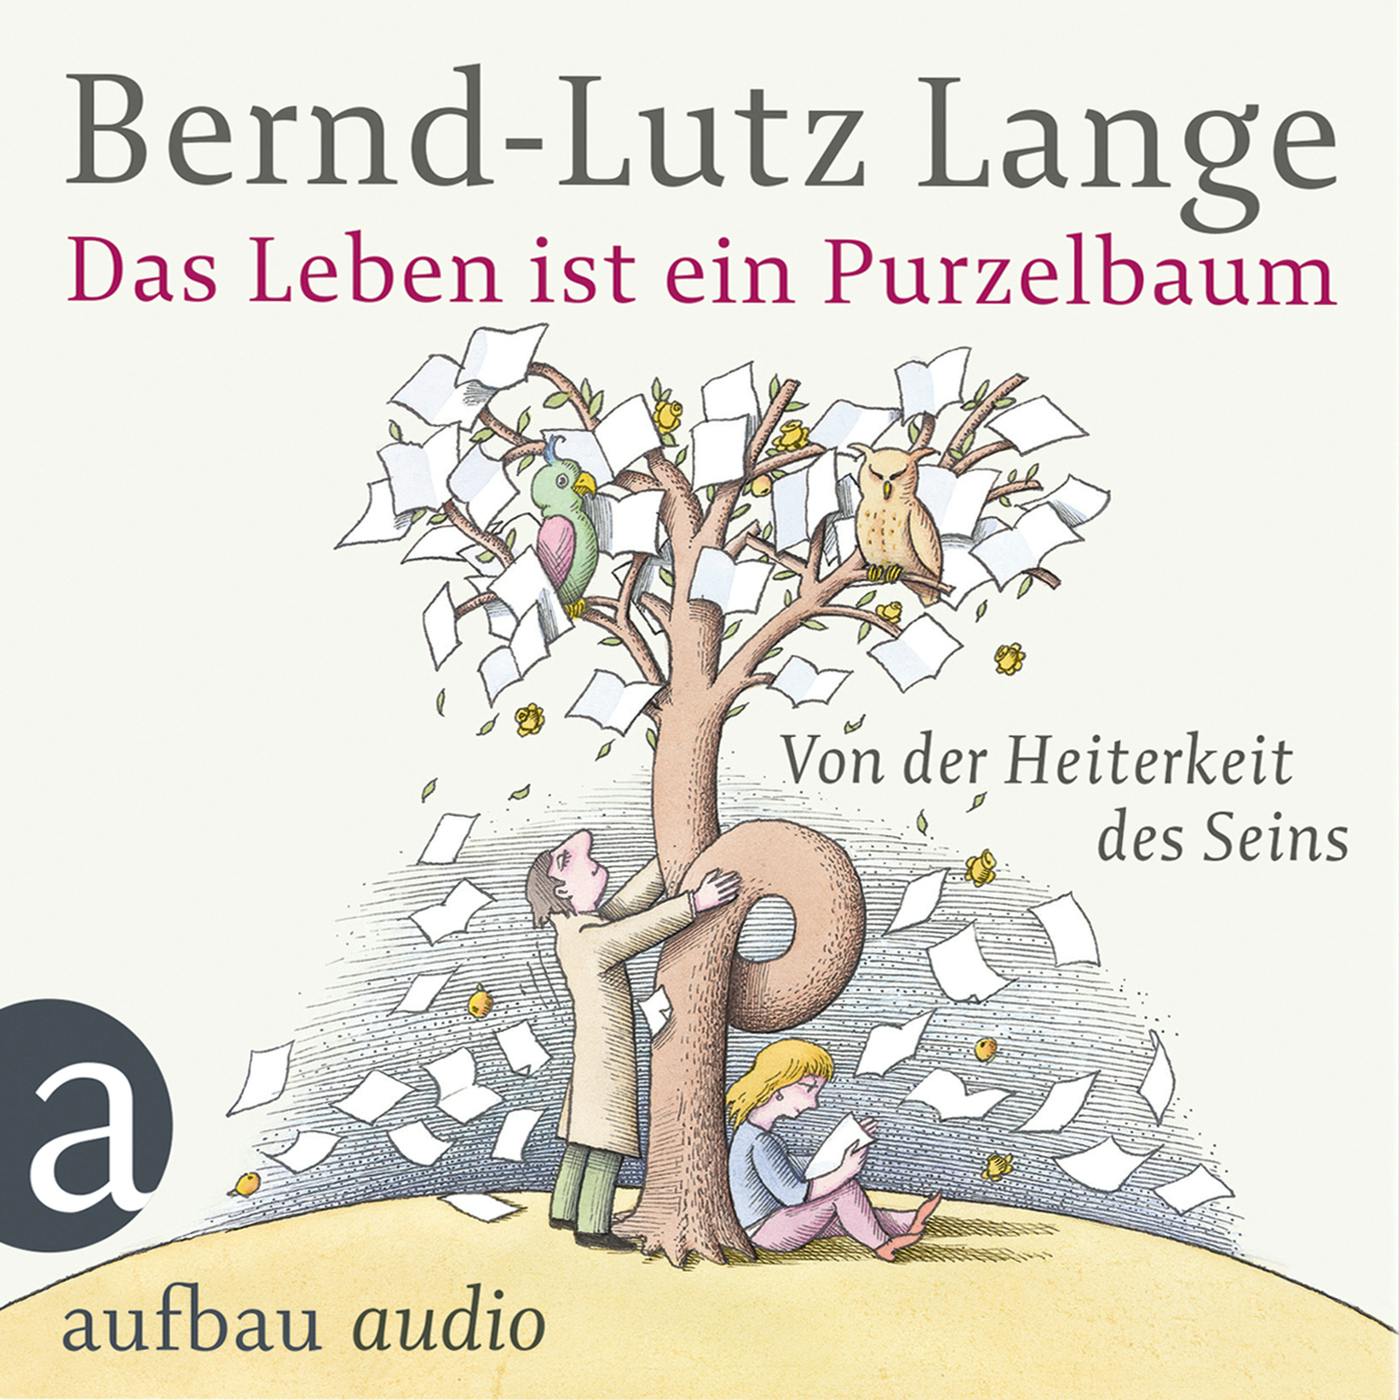 Das Leben ist ein Purzelbaum - Von der Heiterkeit des Seins - Bernd-Lutz Lange